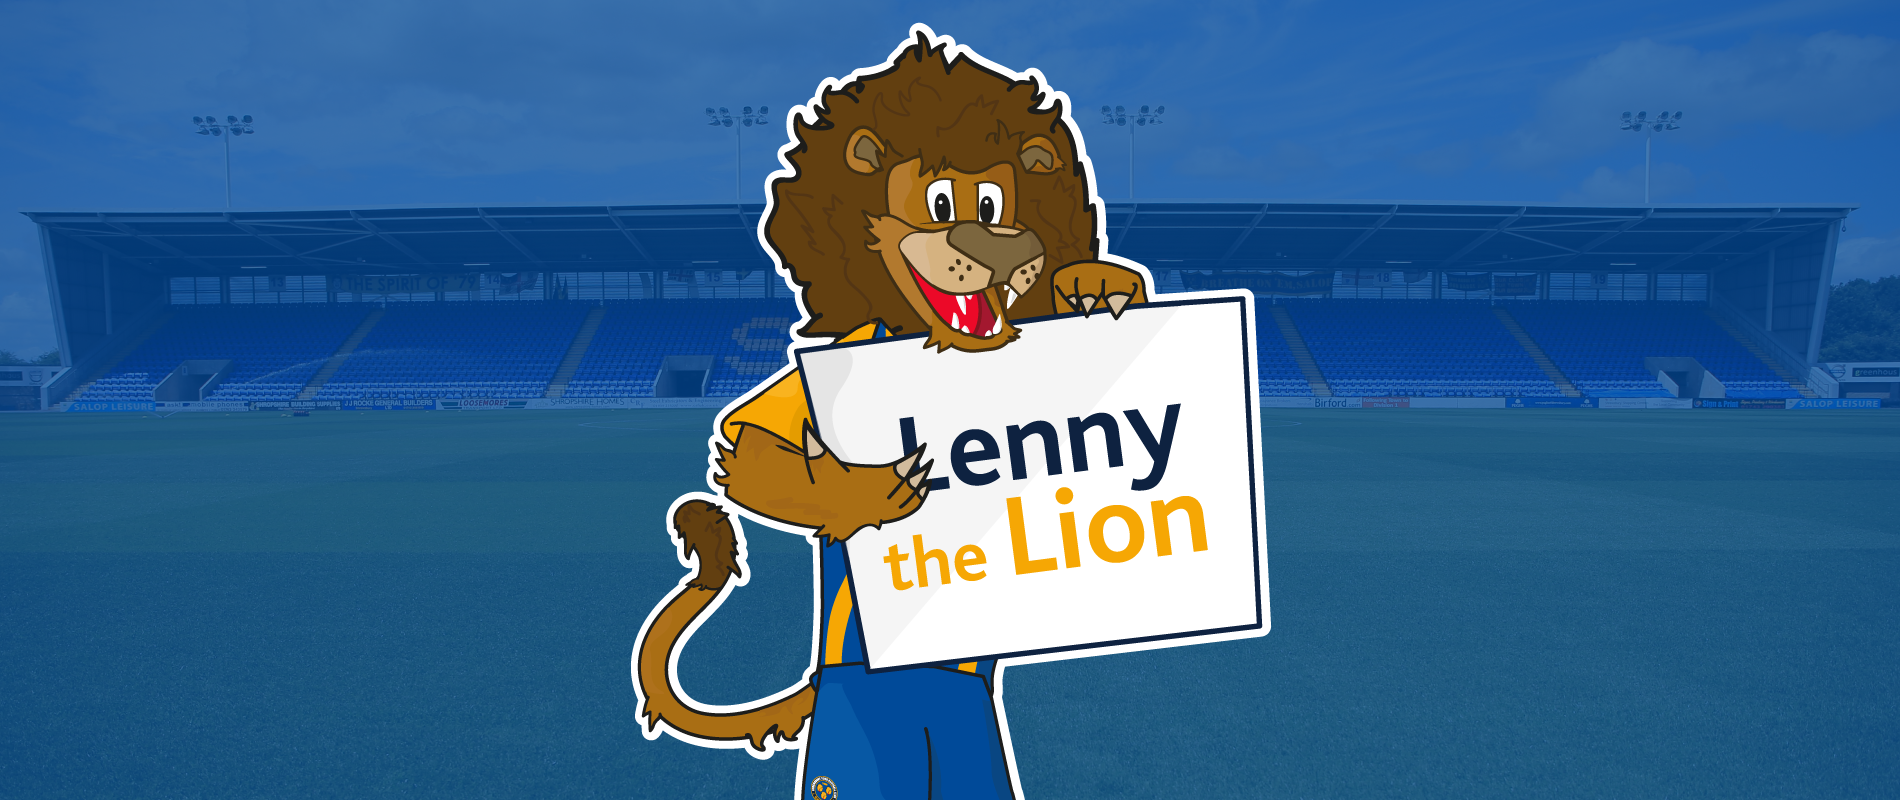 STFC Lenny the Lion